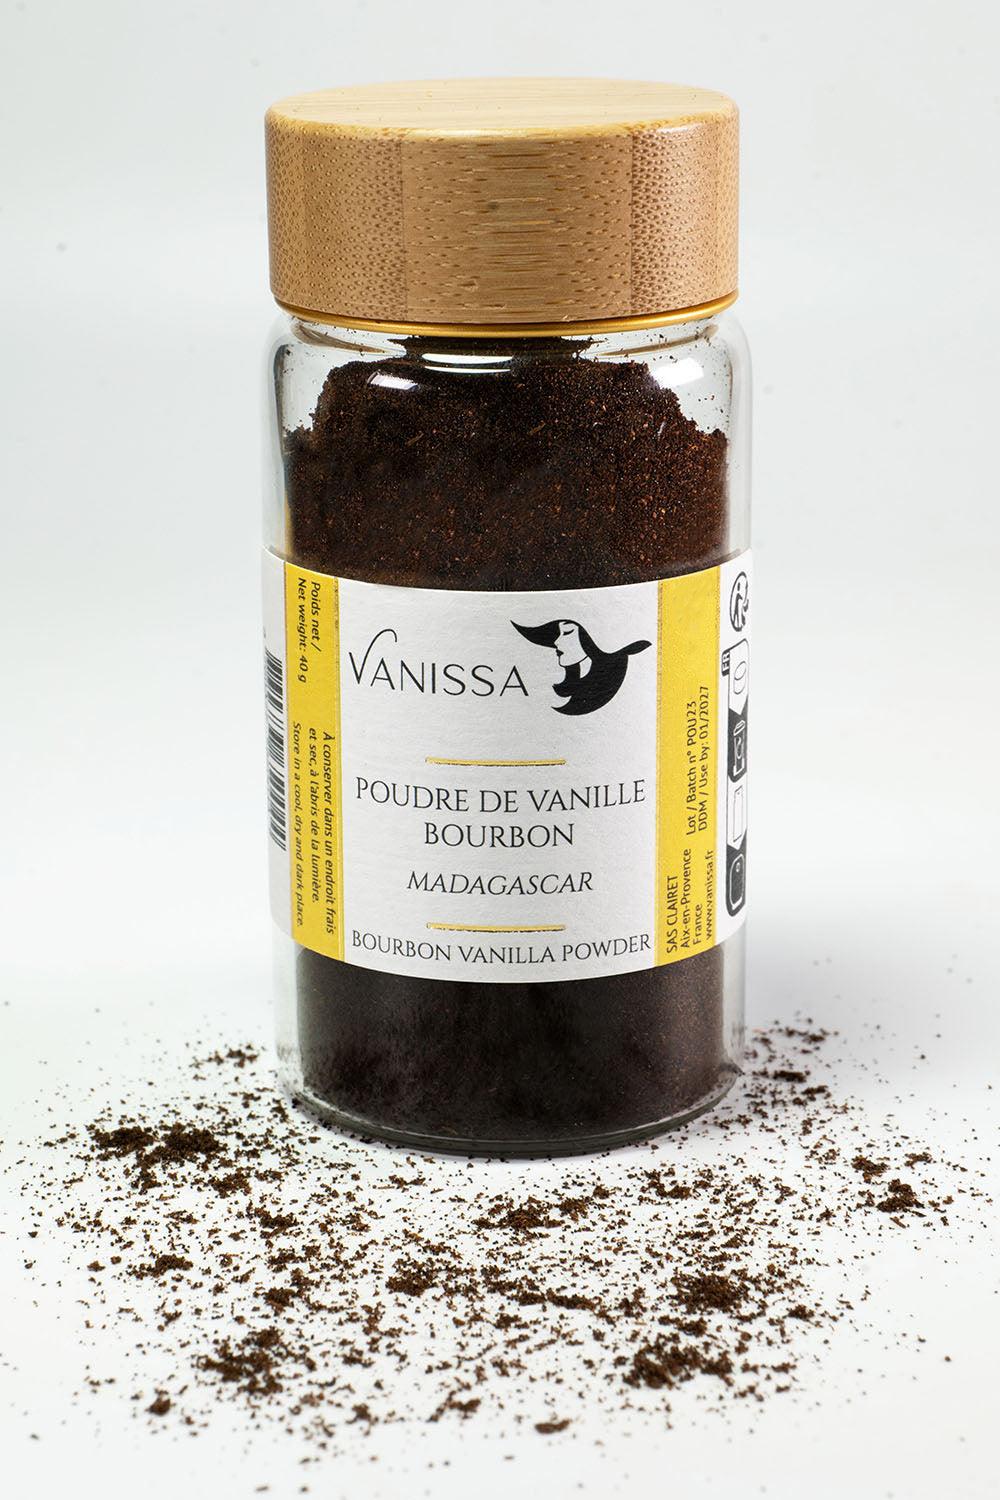 Poudre de Vanille Bourbon 100% Gousse - Madagascar - Vanissa